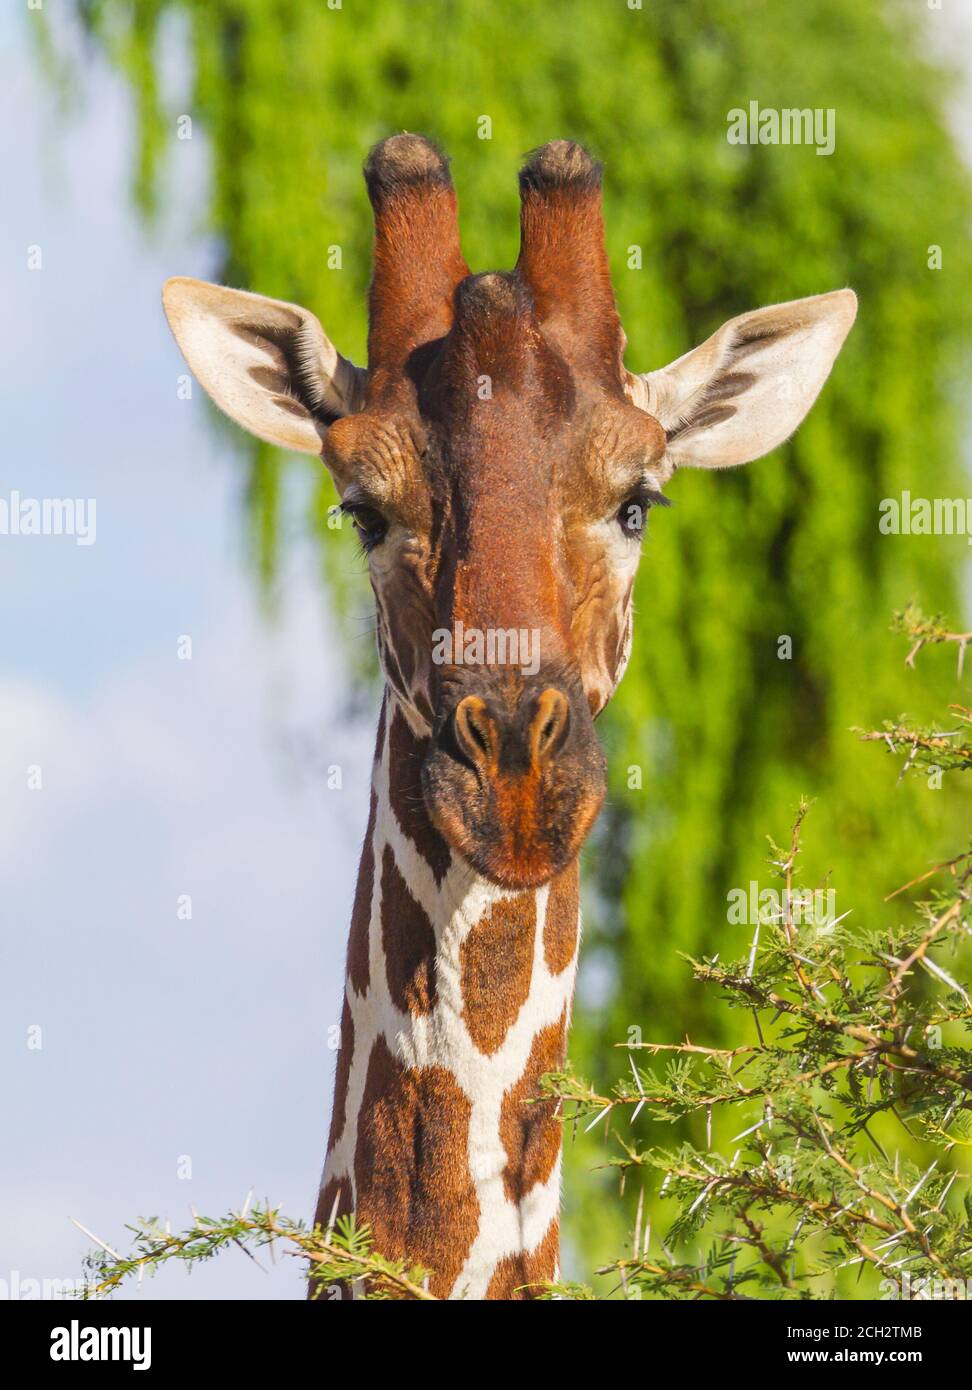 Giraffe Gesicht Nahaufnahme mit großen Augen, lange Wimpern, nach vorne  gerichtet. Vertikales Foto der afrikanischen Netzgiraffe im Samburu  Reserve, Kenia, Afrika Stockfotografie - Alamy